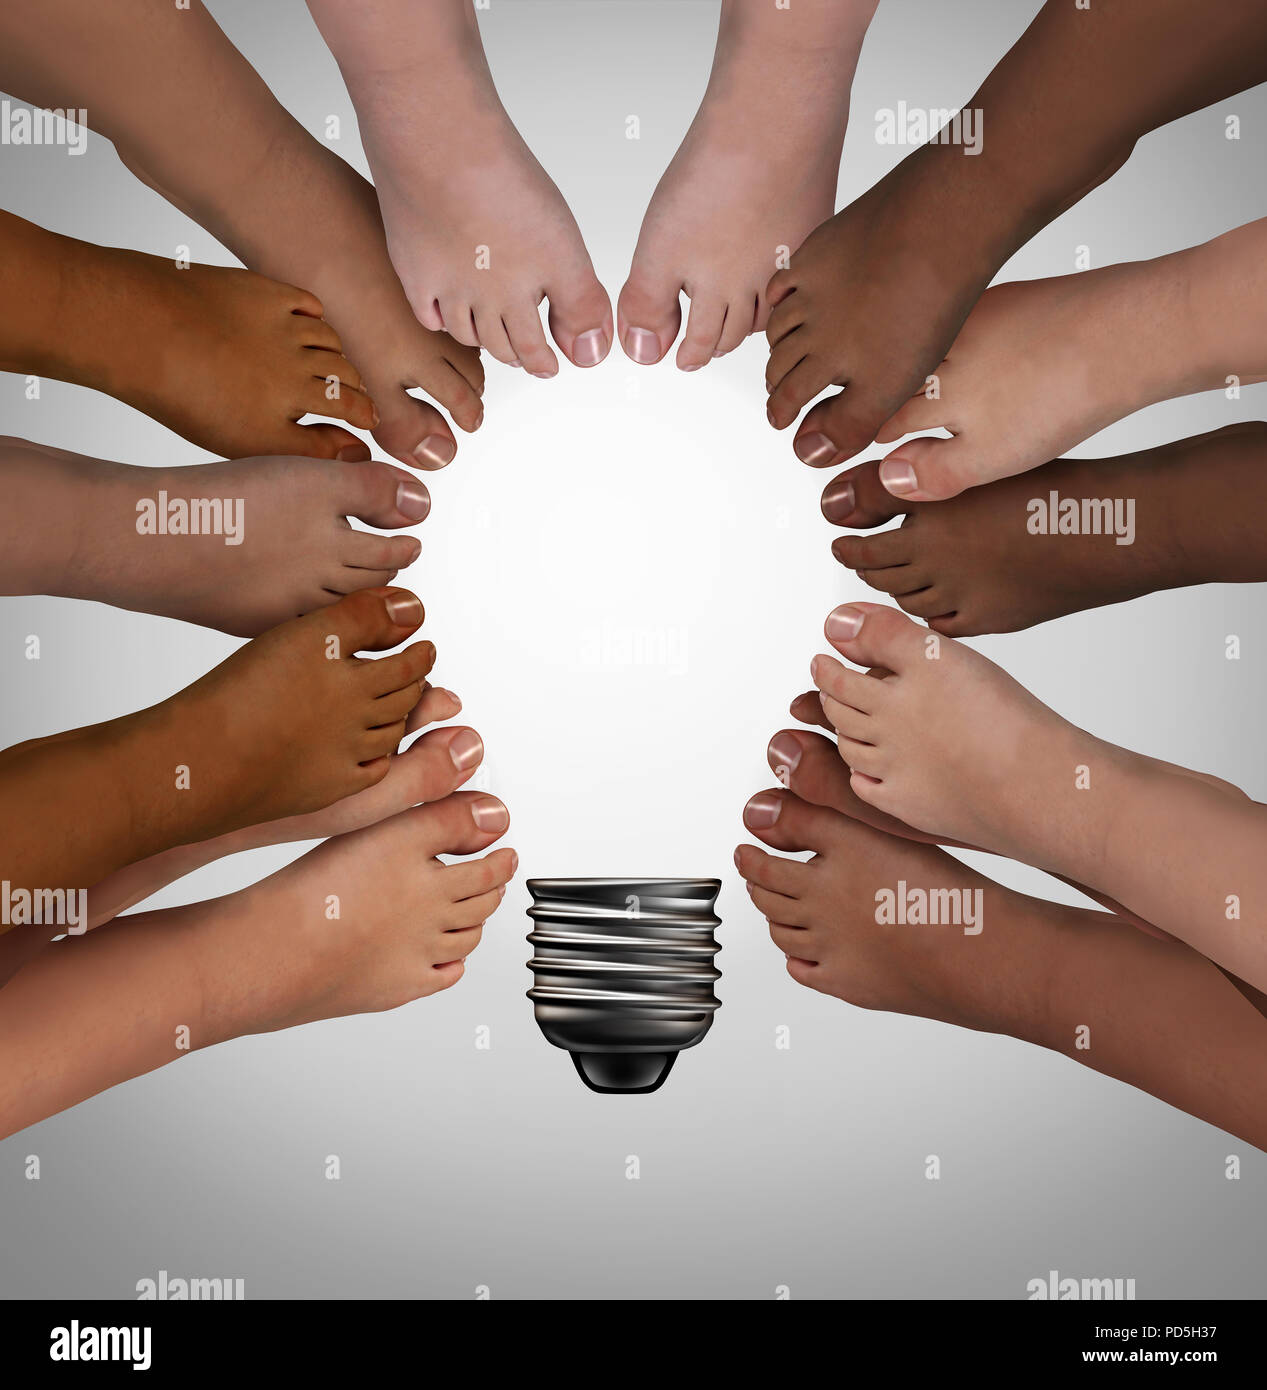 Vielfalt gemeinsam so verschieden Menschen denken als Team die Füße in der Form eines inspirierenden Glühlampe als Gemeinschaft unterstützen. Stockfoto